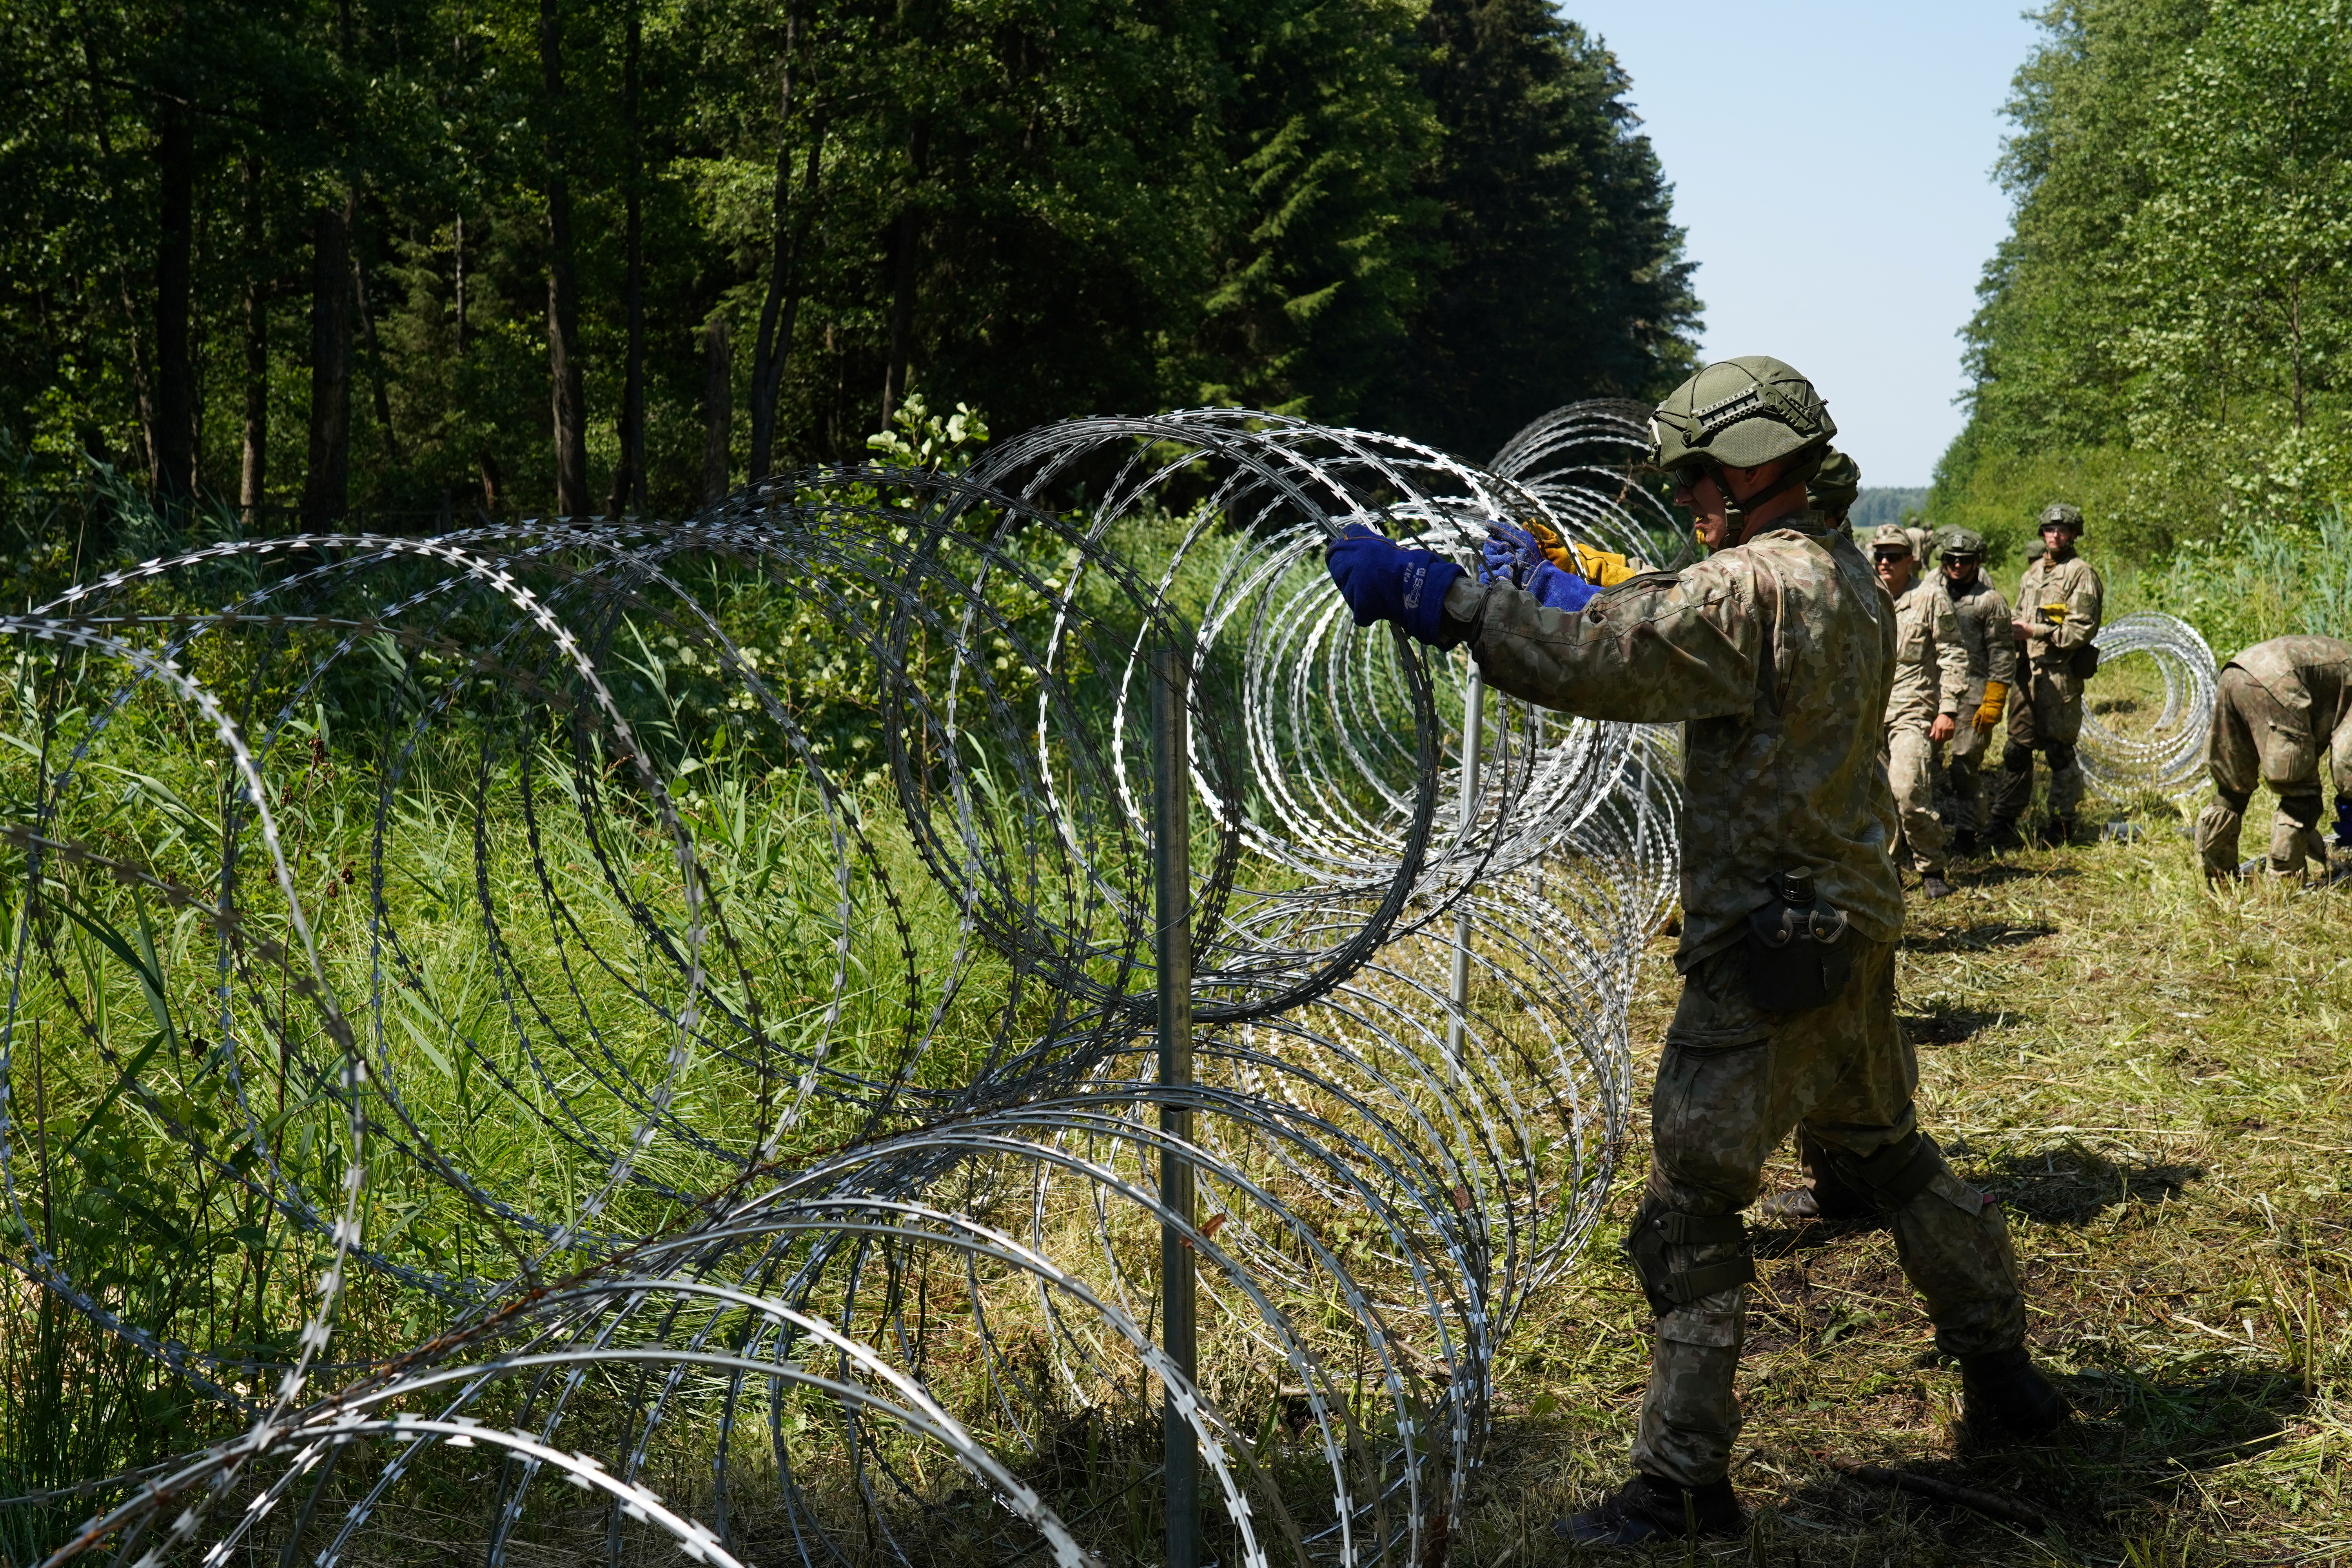 लिथुआनियाई सेना के जवानों ने 9 जुलाई, 2021 को लिथुआनिया के ड्रुस्किनिंकाई में बेलारूस के साथ सीमा पर रेजर तार स्थापित किया। रॉयटर्स/जेनिस लाईज़ंस